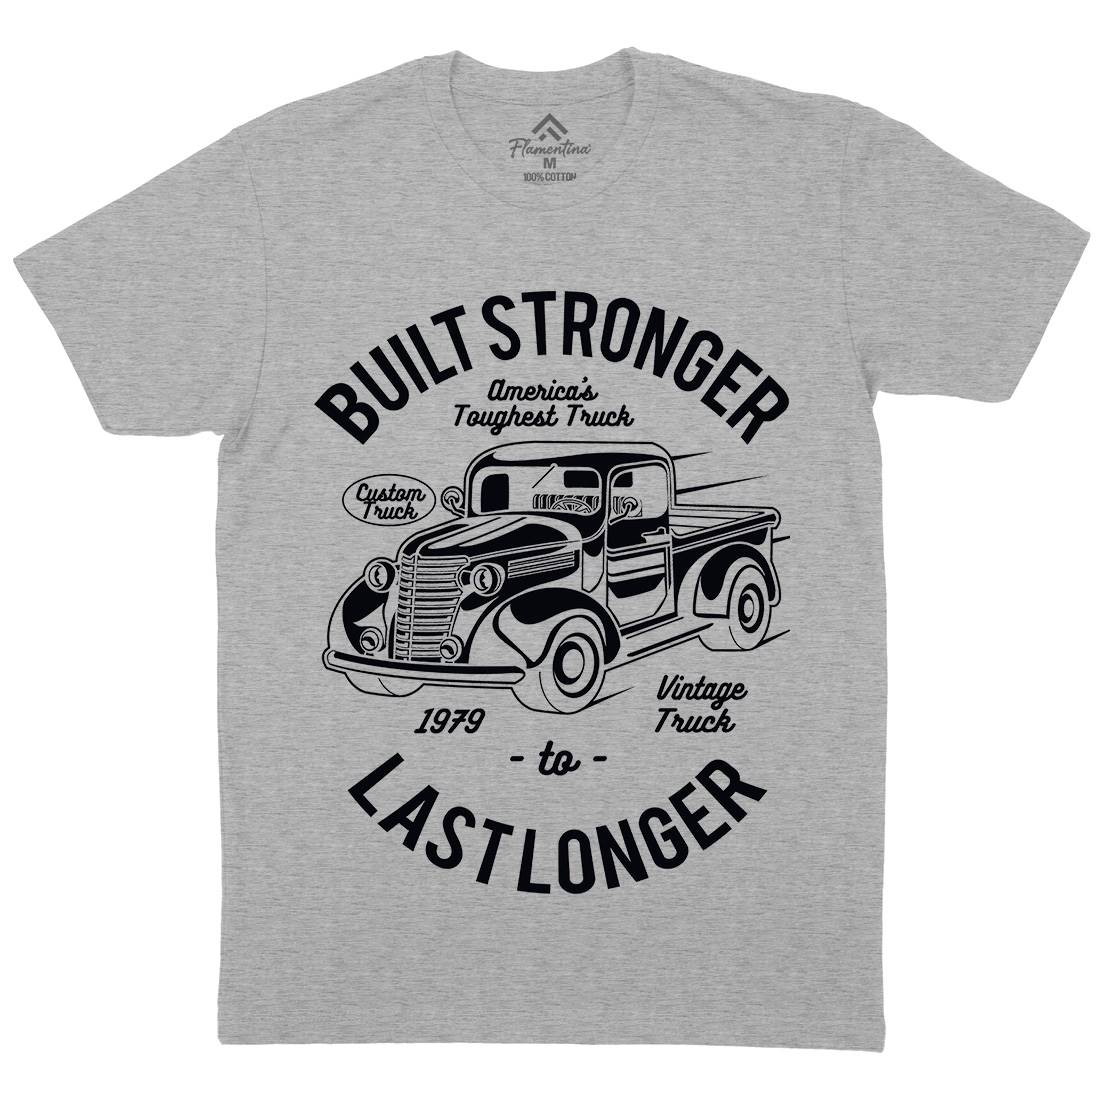 Built Stronger Mens Organic Crew Neck T-Shirt Cars A023